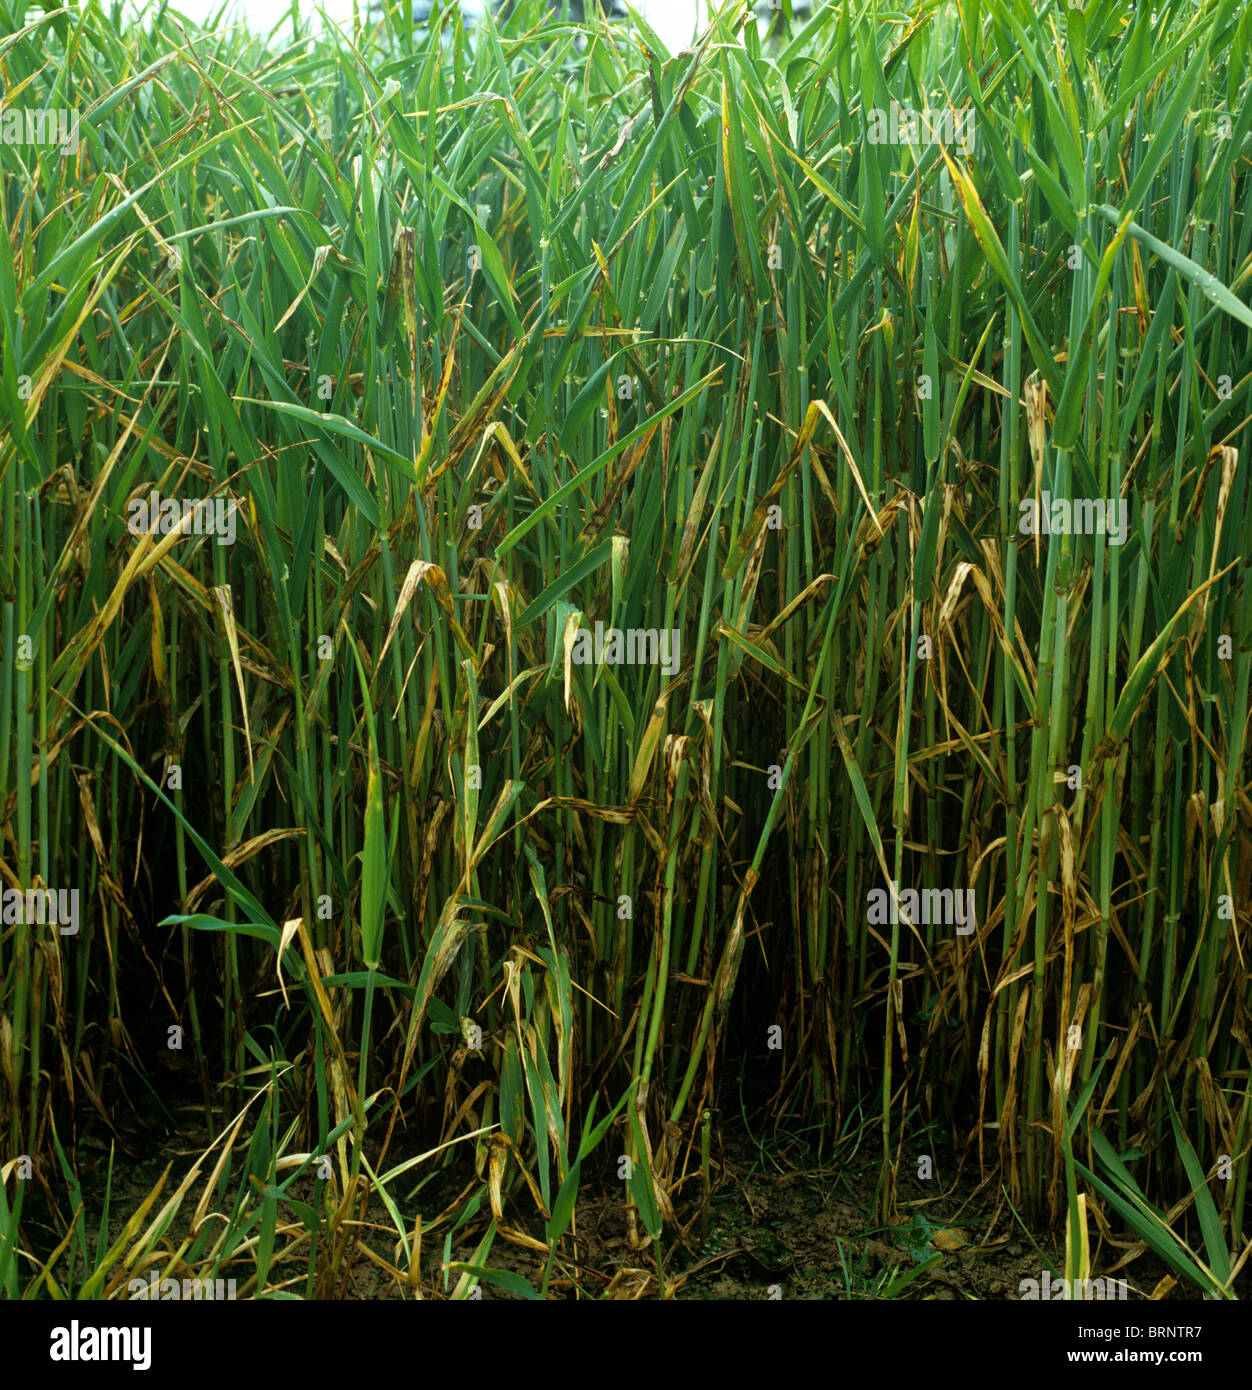 Barley leaf blotch or leaf scald (Rhynchosporium secalis) infection on barley crop Stock Photo